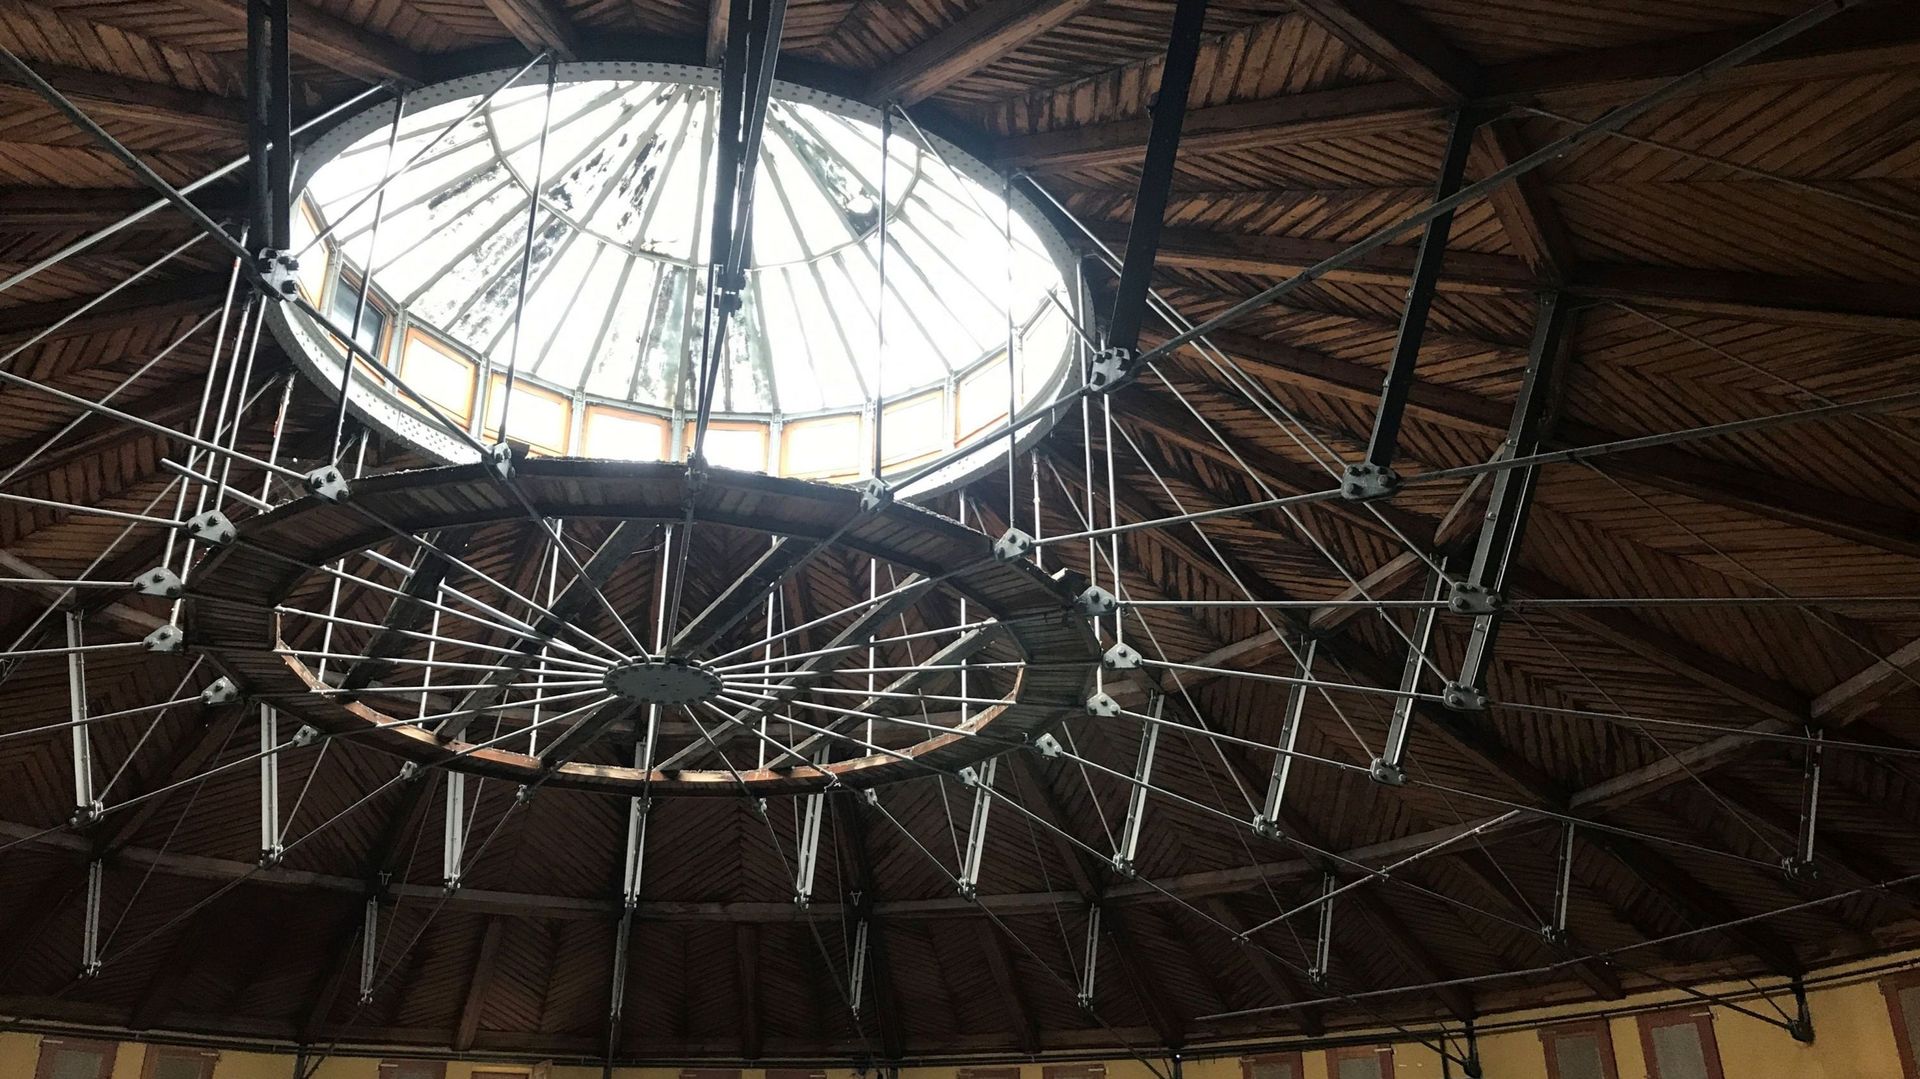 La charpente metal-bois-verre de l’ancien cirque d’hiver de Liège